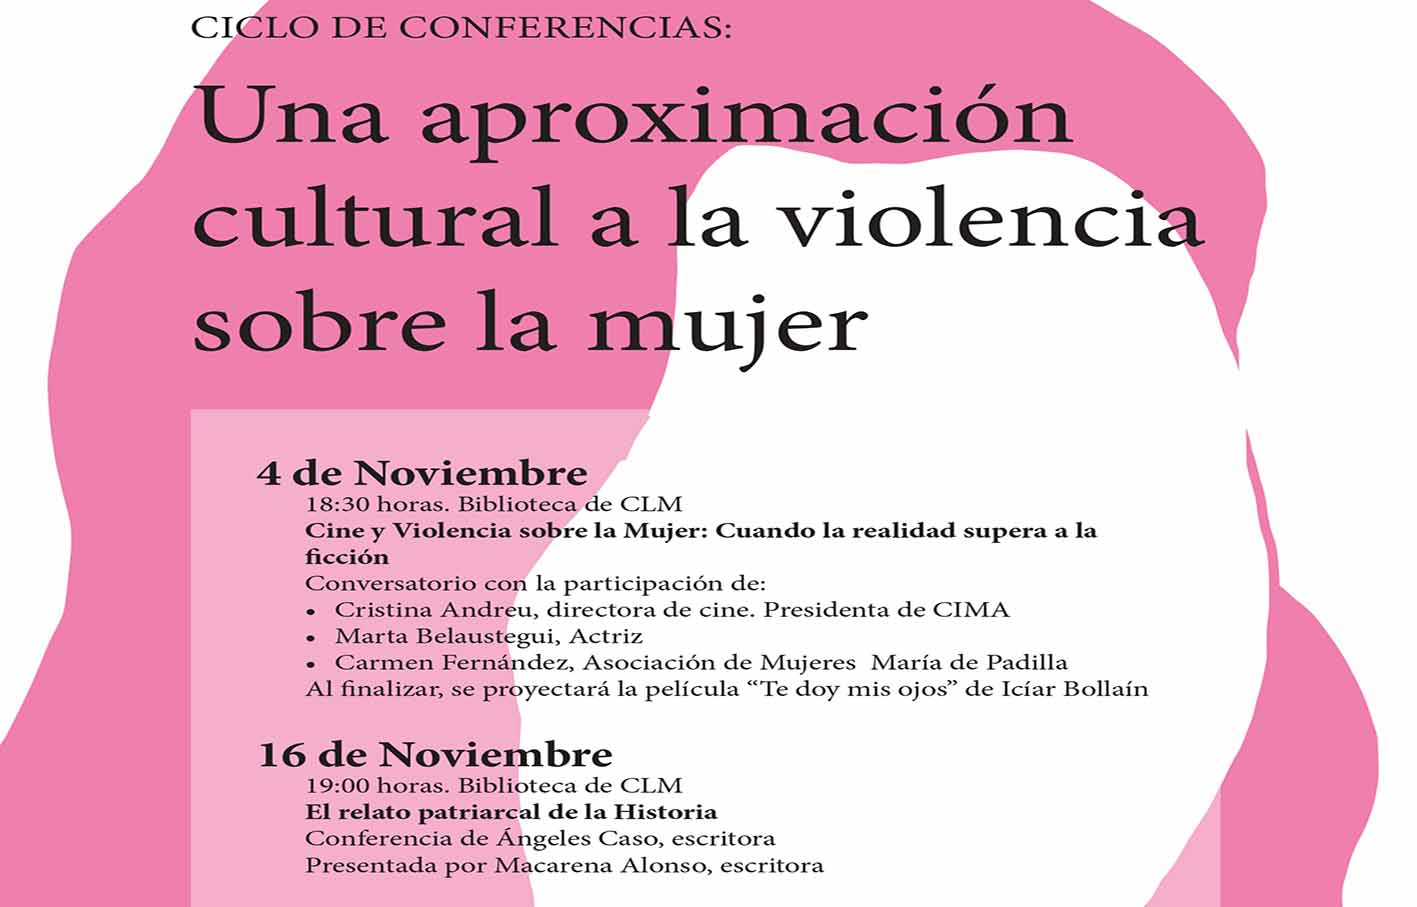 Cartel del ciclo de conferencias sobre la Eliminación de la Violencia contra la Mujer